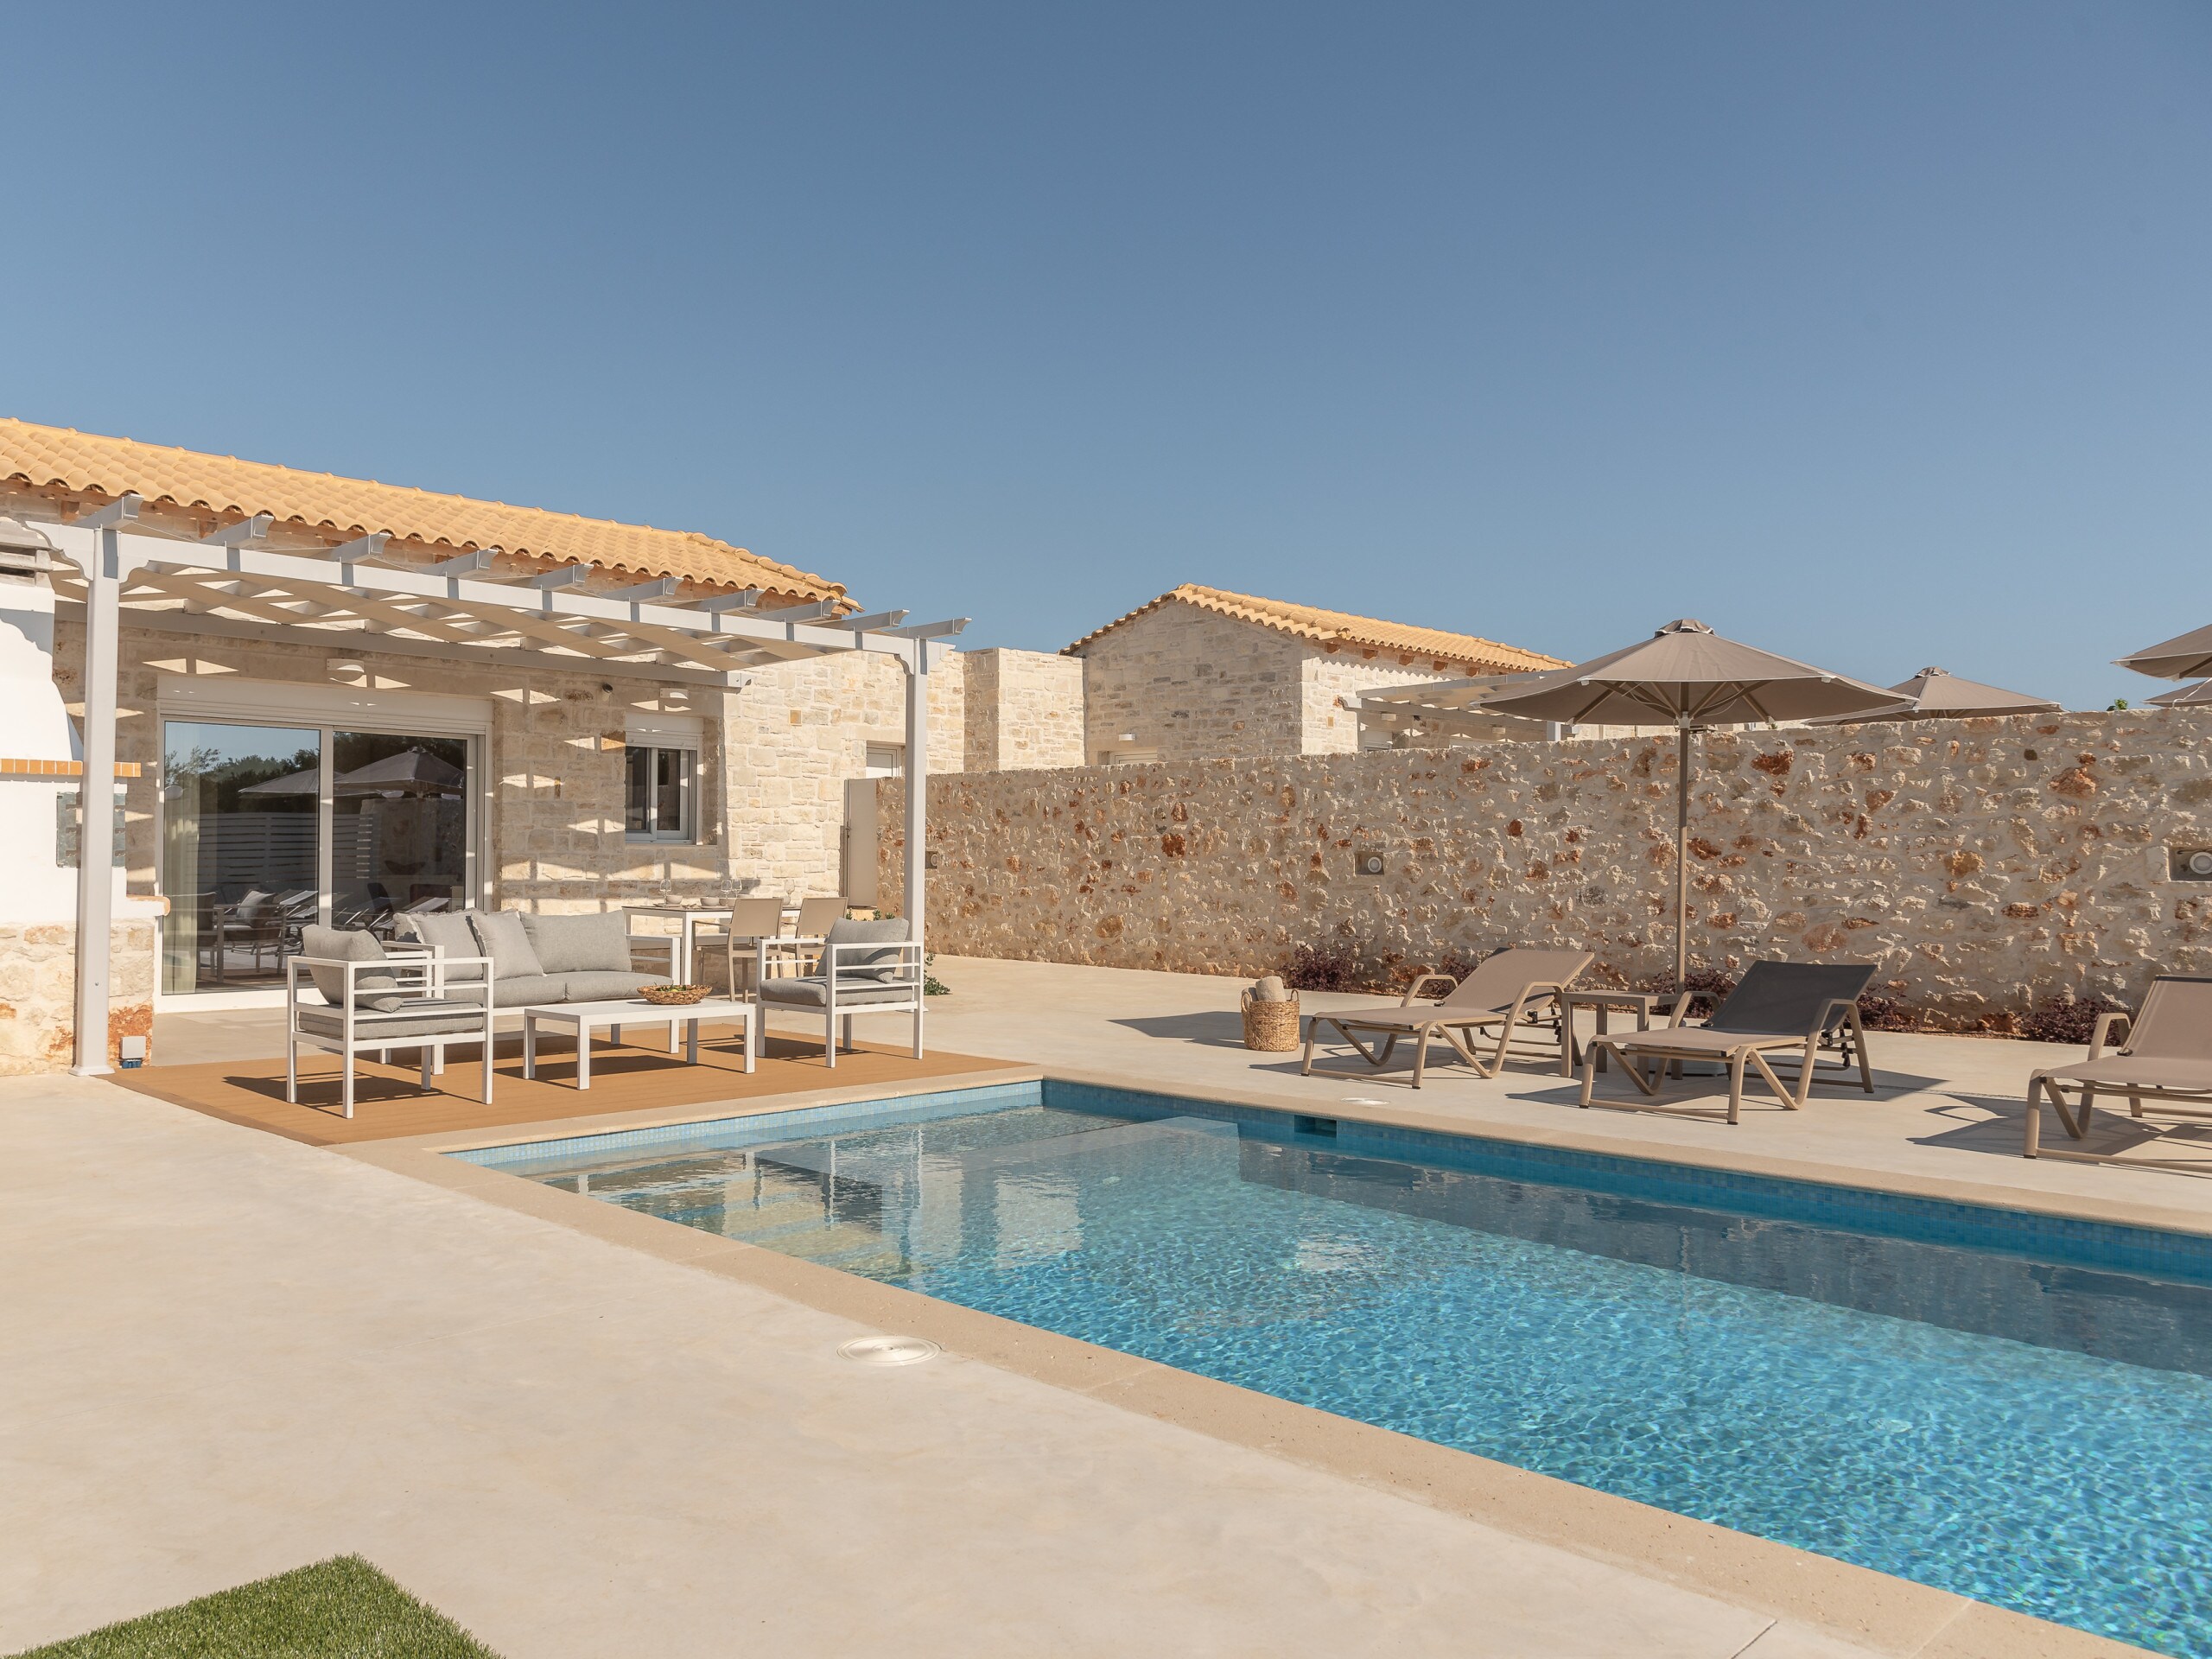 A Villa with a sensory driven design private pool